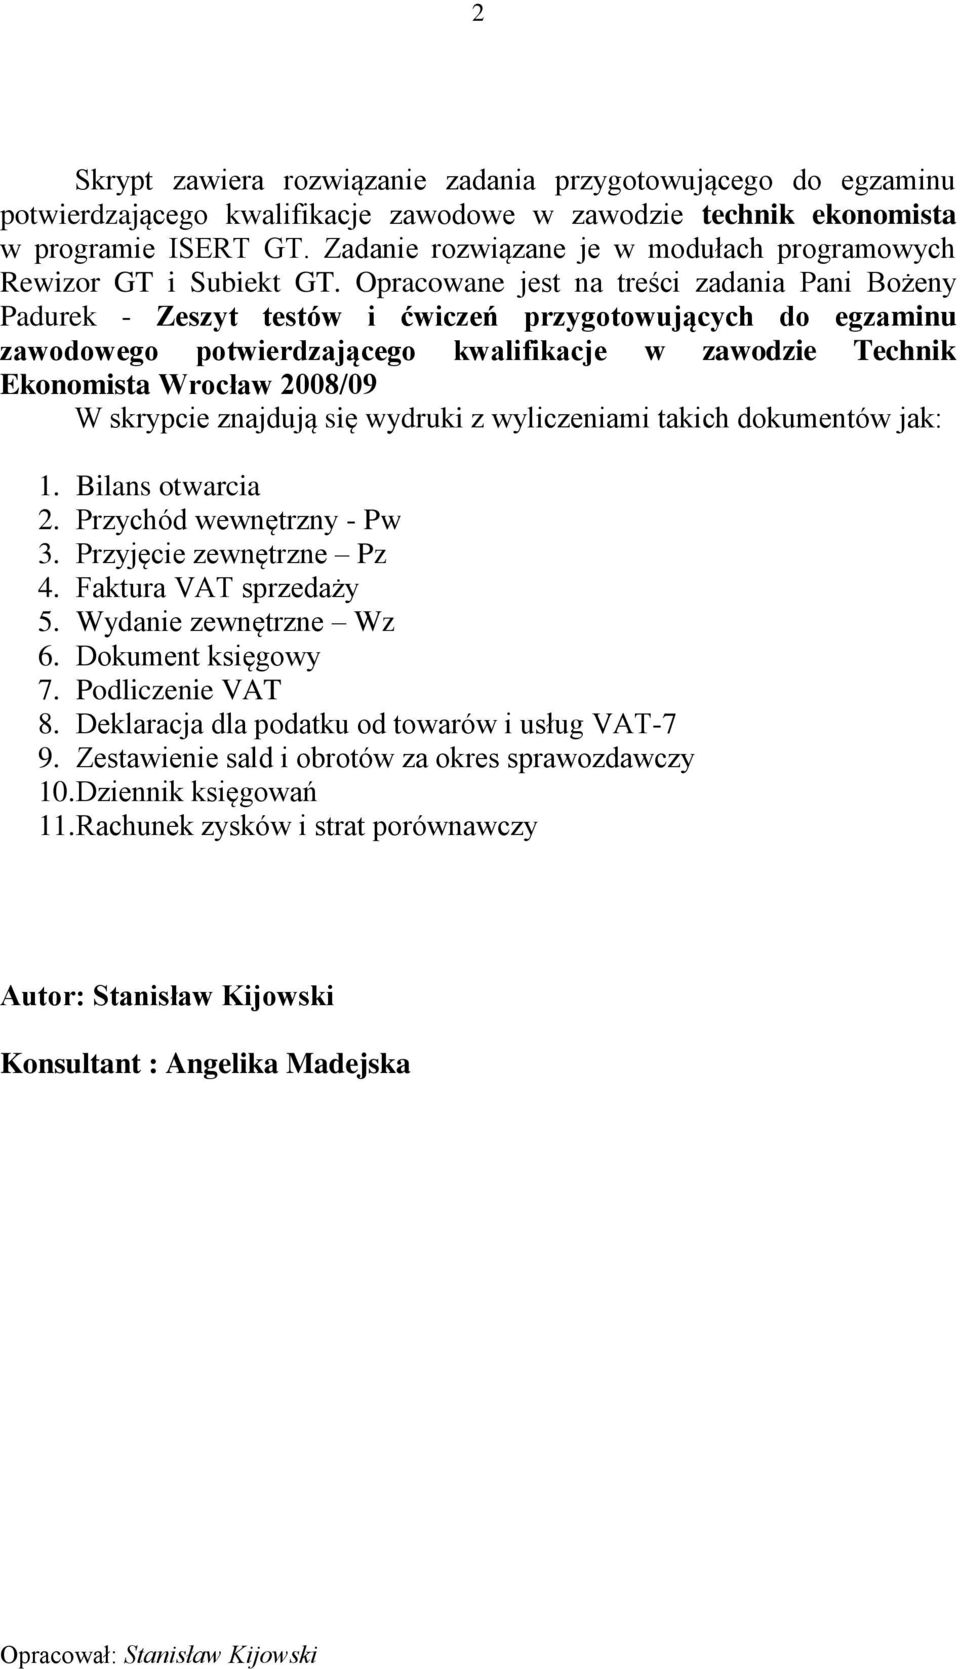 Opracowane jest na treści zadania Pani Bożeny Padurek - Zeszyt testów i ćwiczeń przygotowujących do egzaminu zawodowego potwierdzającego kwalifikacje w zawodzie Technik Ekonomista Wrocław 2008/09 W